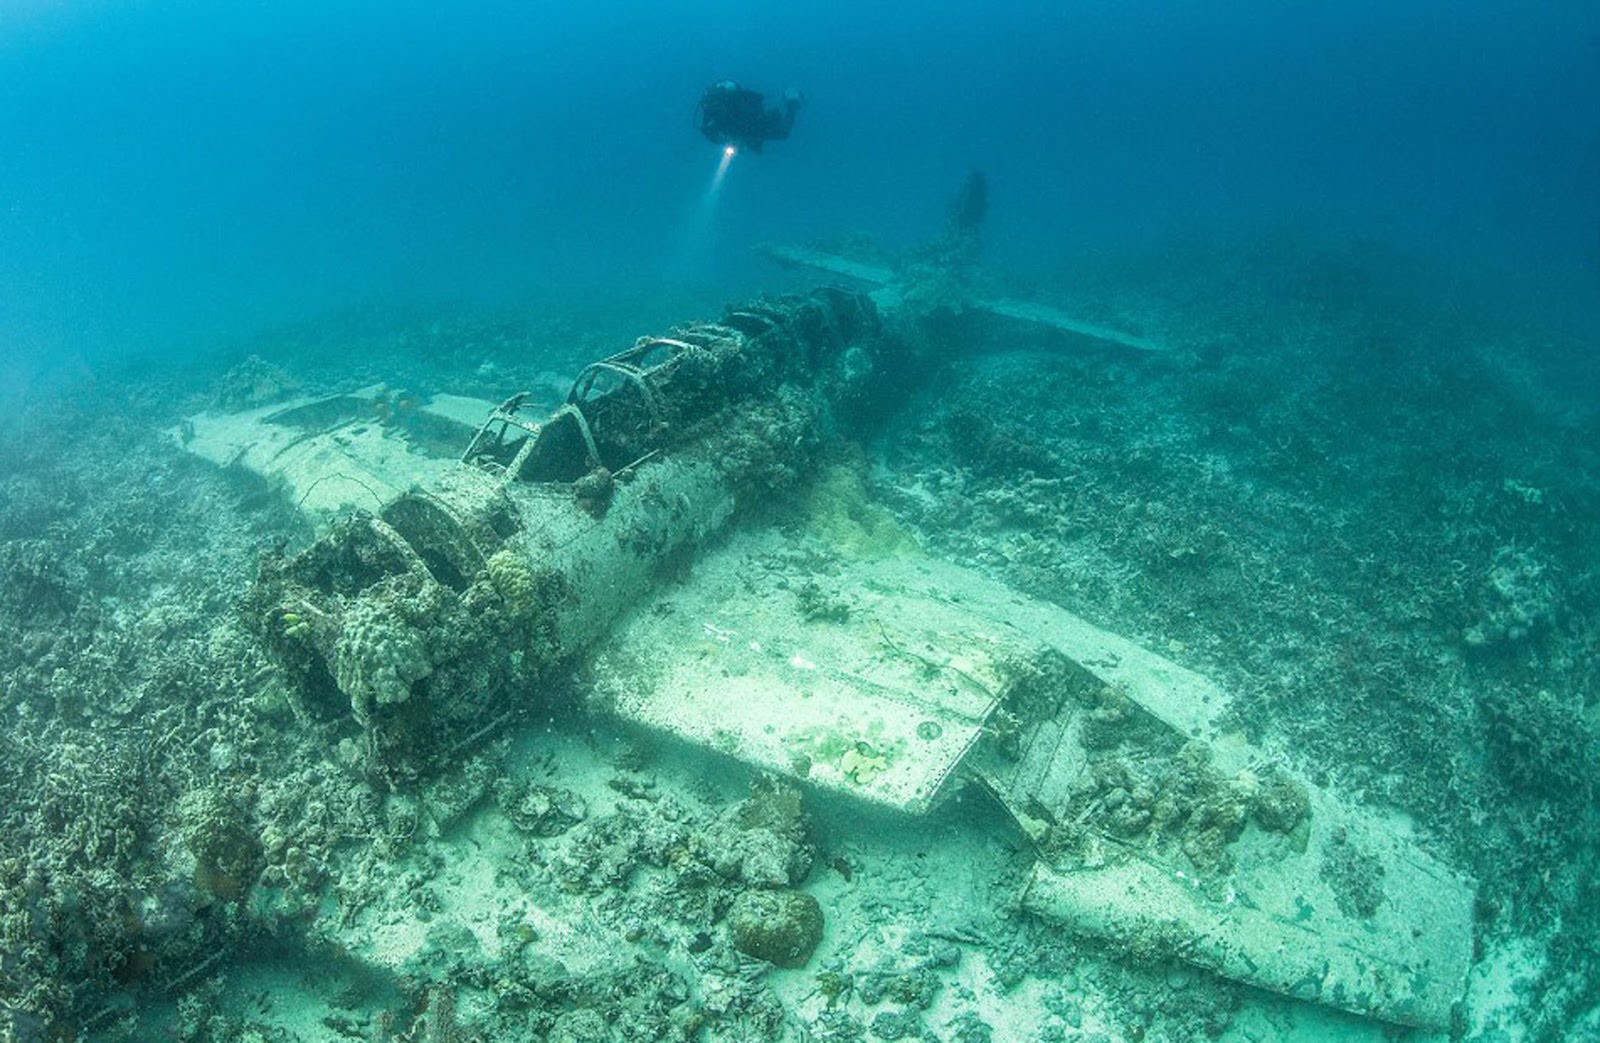 Останки затонувшего самолёта, сбитого во время операции Хэйлстоун, остров Вено, атолл Чуук, Тихий океан. Моря и океаны, интересное, подводный мир